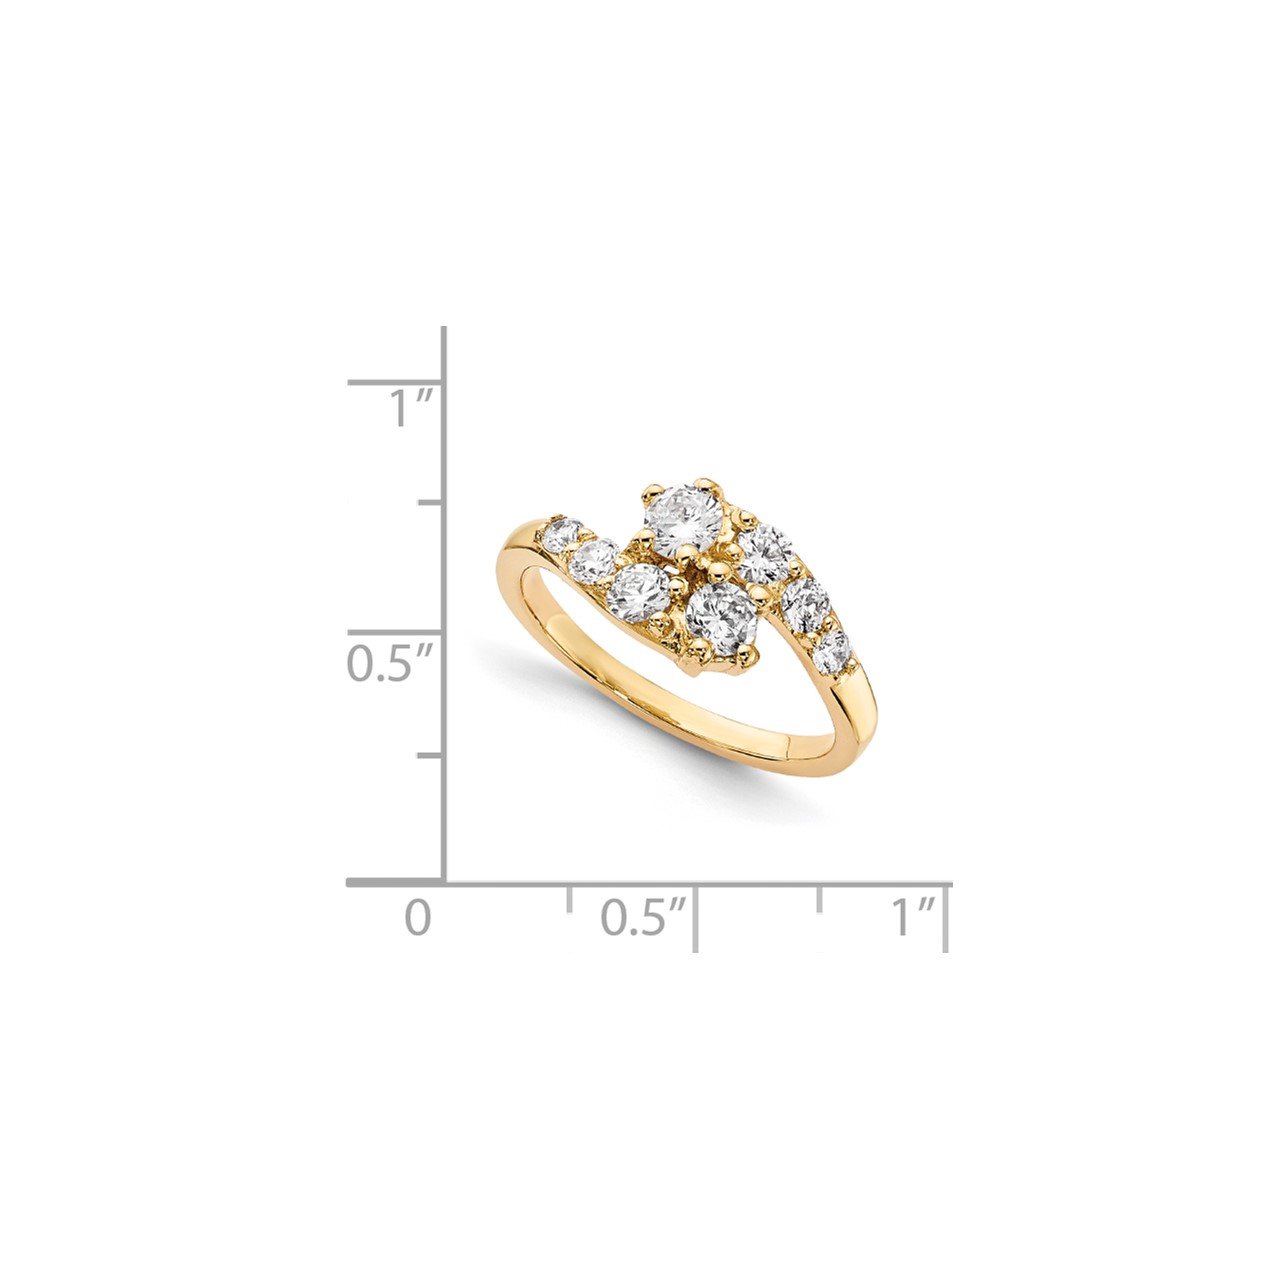 14KY AA Diamond 2-stone Ring Semi-Mount - 2.6 mm center stones-6